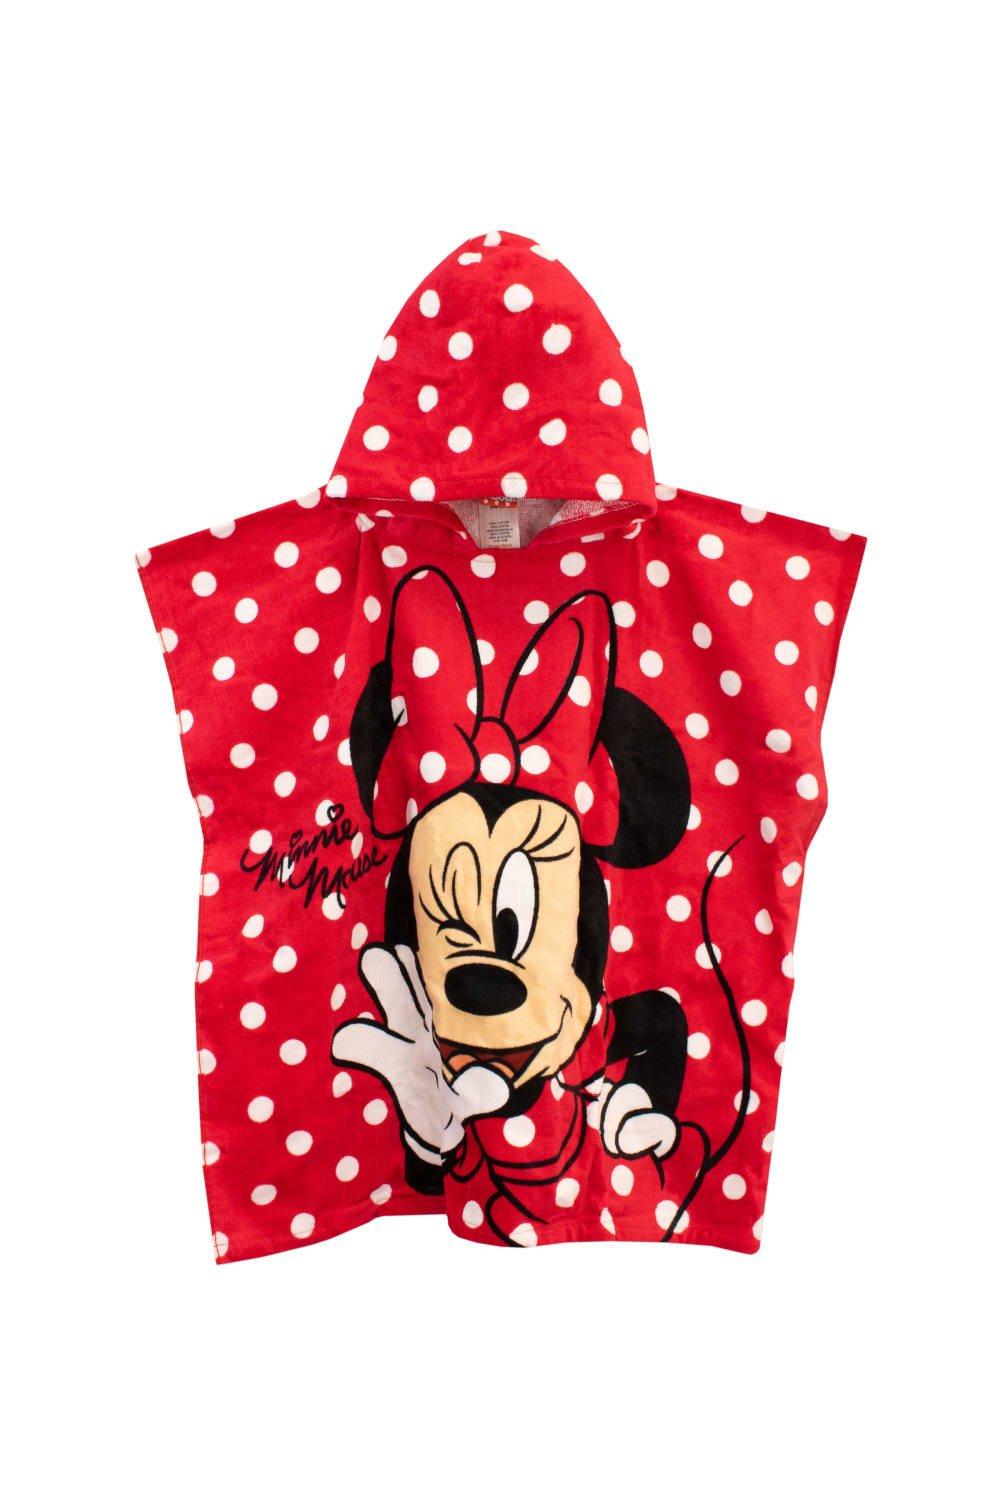 Полотенце-пончо с капюшоном Минни Маус Disney, красный полотенца крошка я полотенце пончо гномик